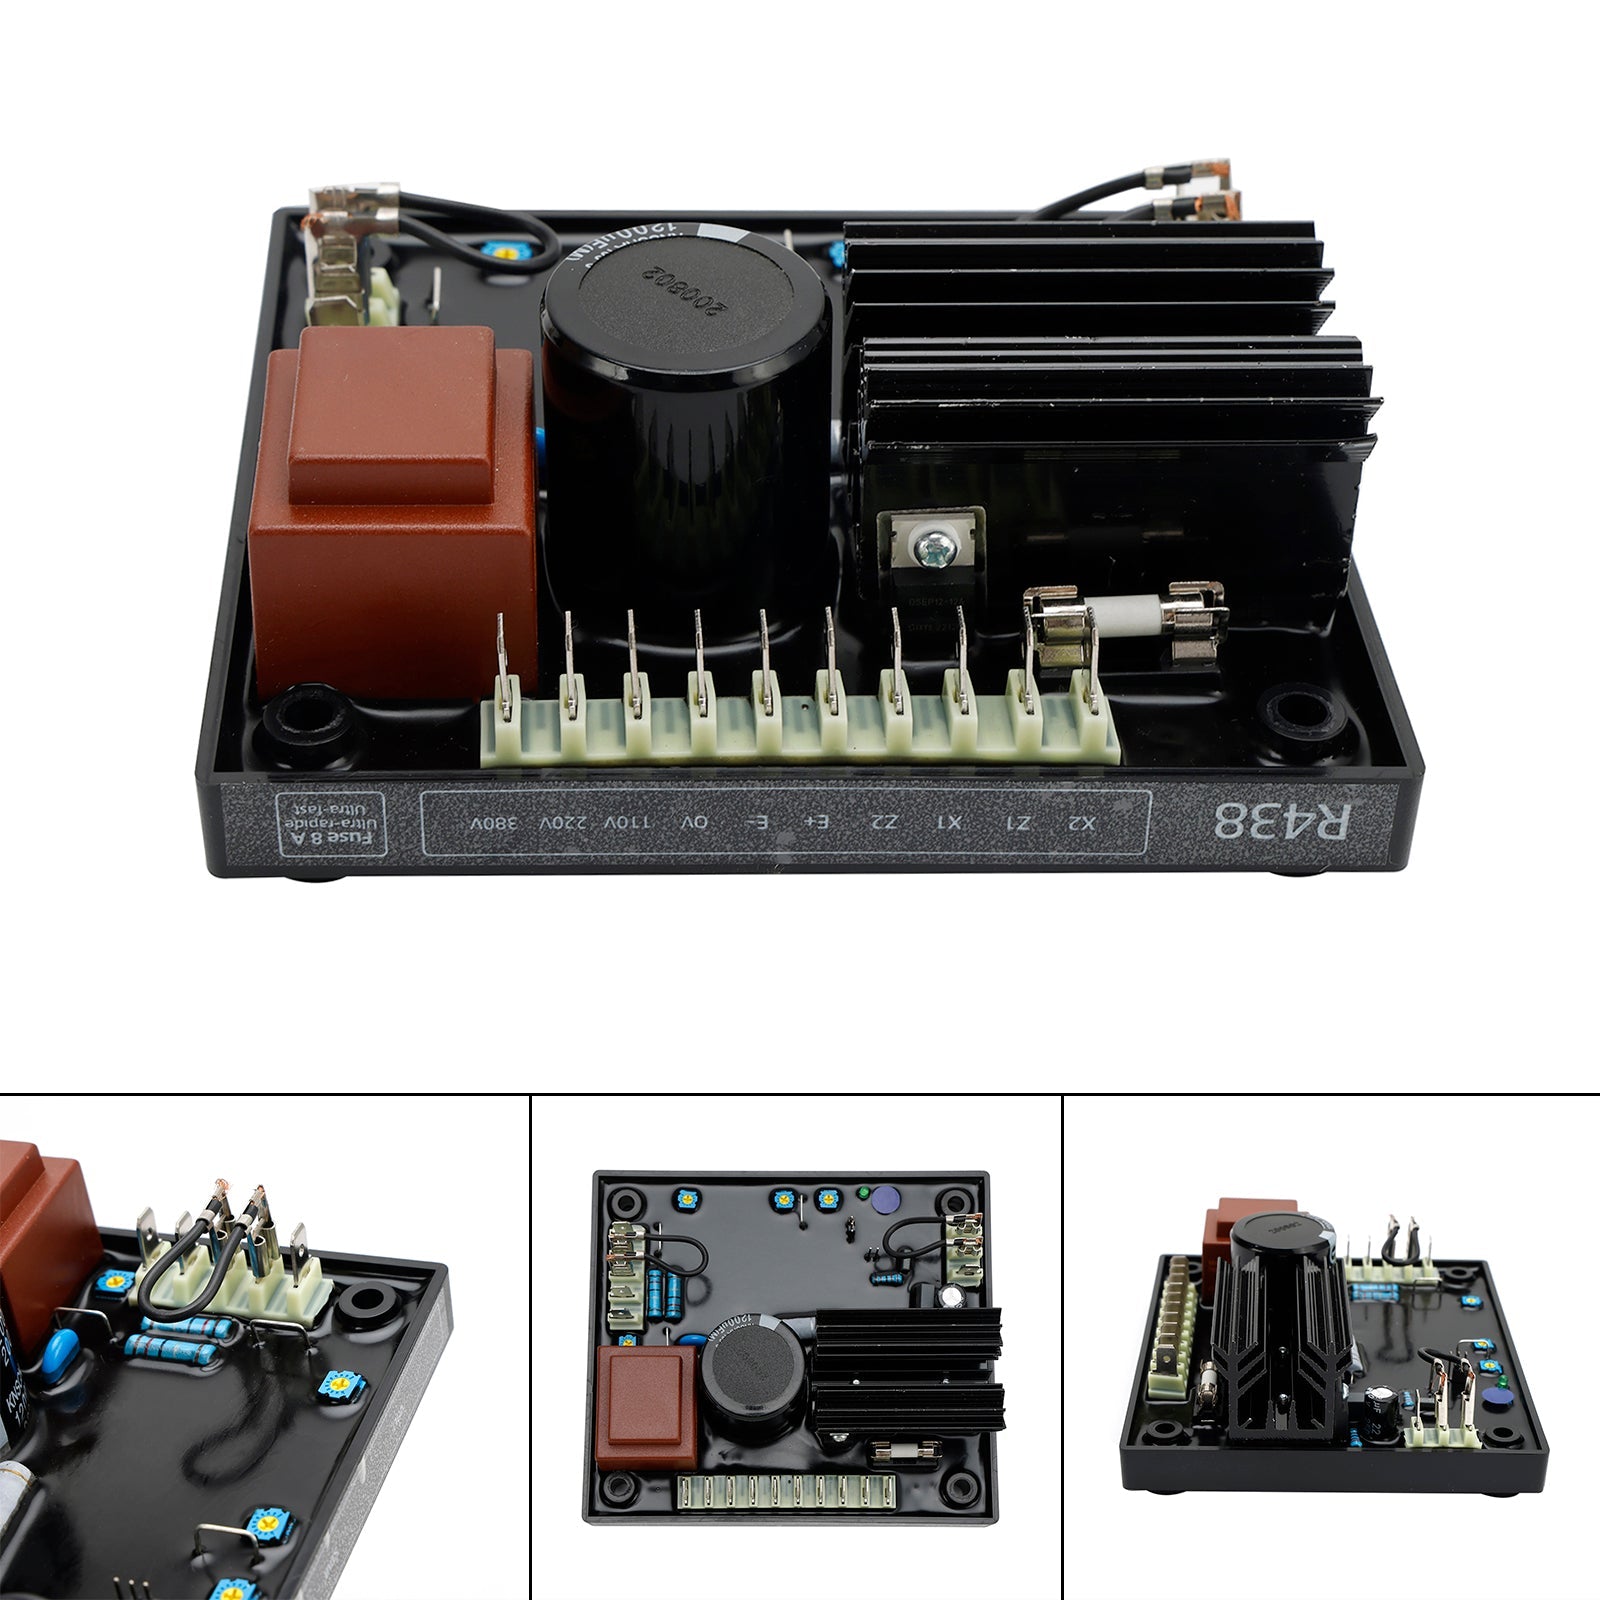 Regulador de voltaje automático AVR R438 compatible con generador Leroy Somer